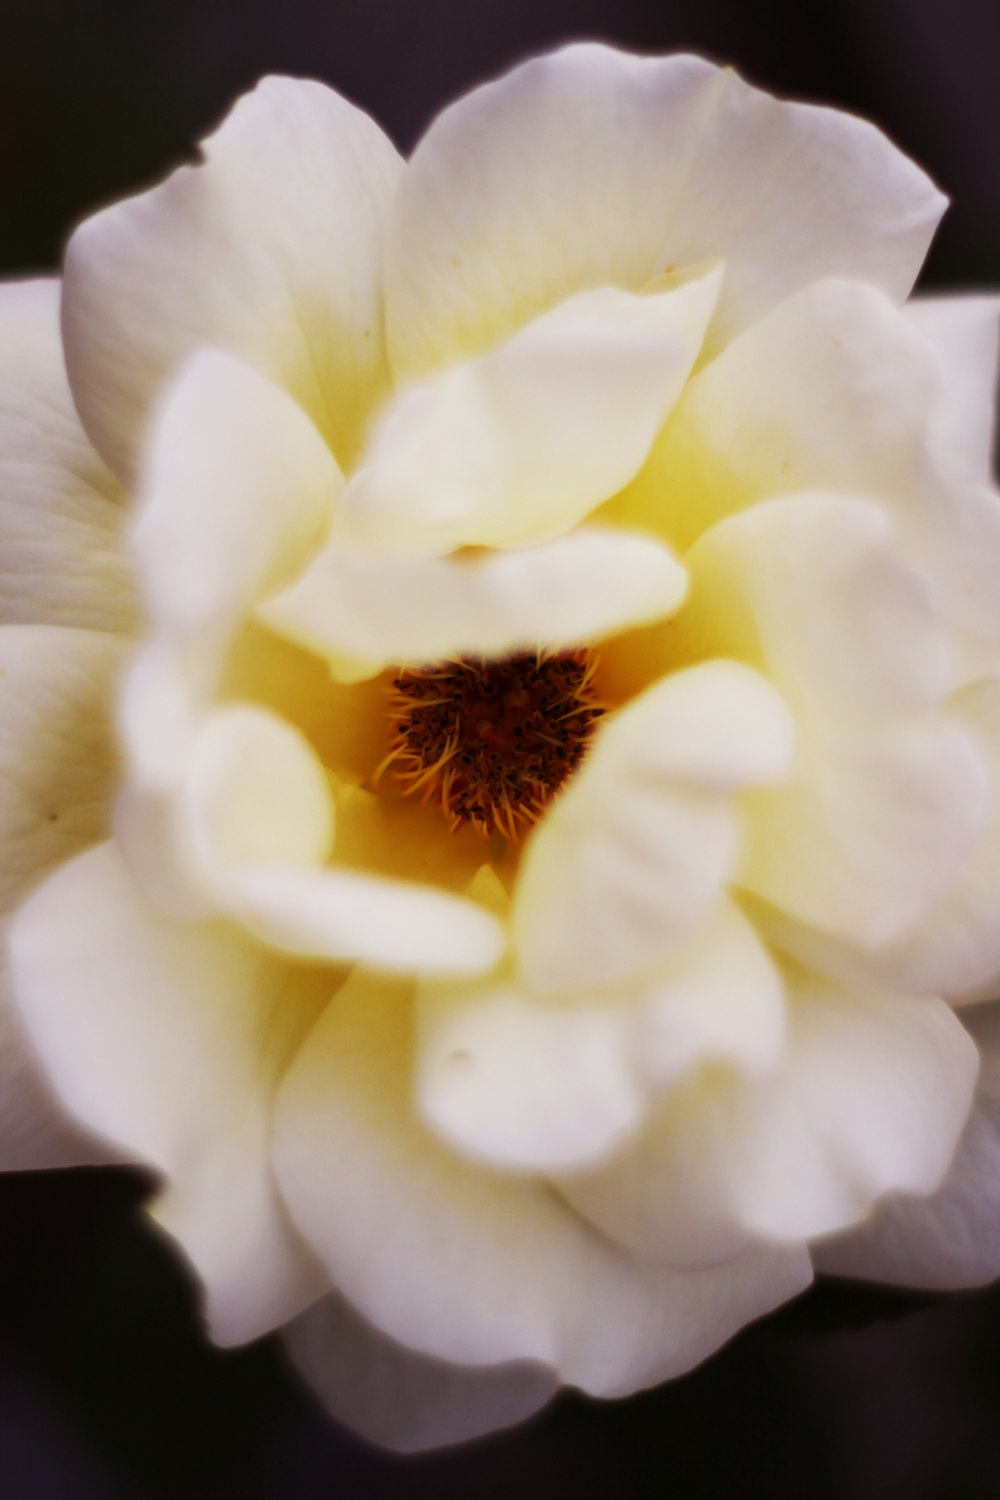 fiore bianco in colpo macro